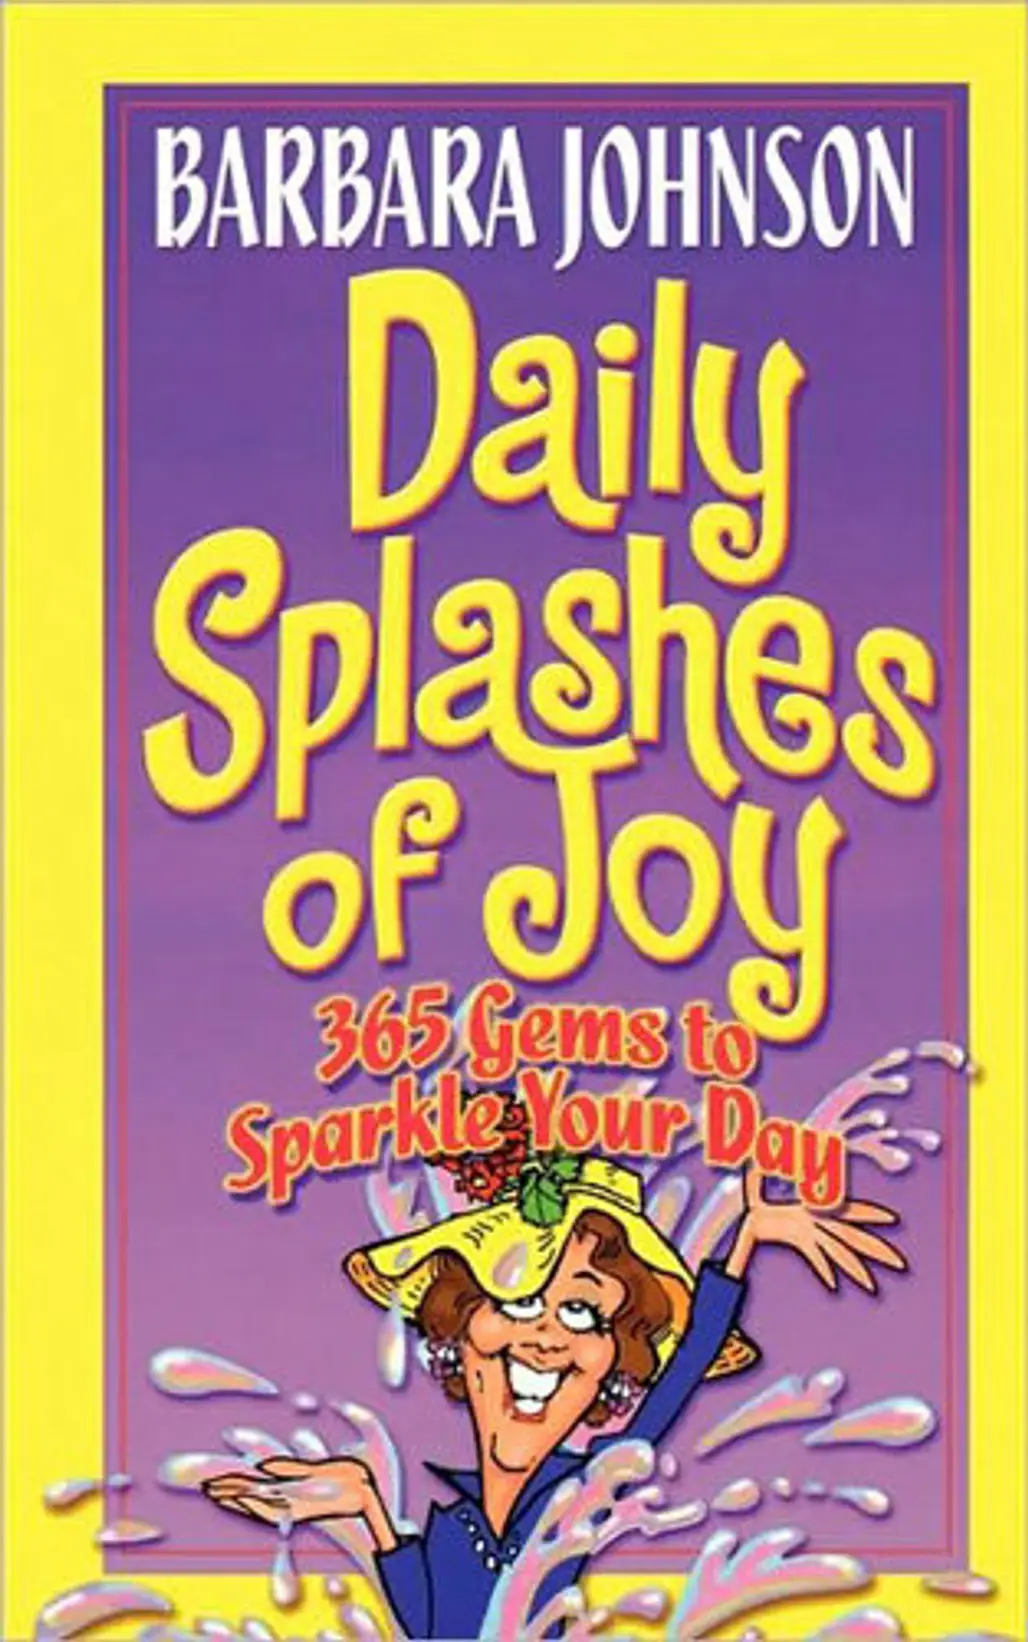 “Daily Splashes of Joy” by Barbara Johnson